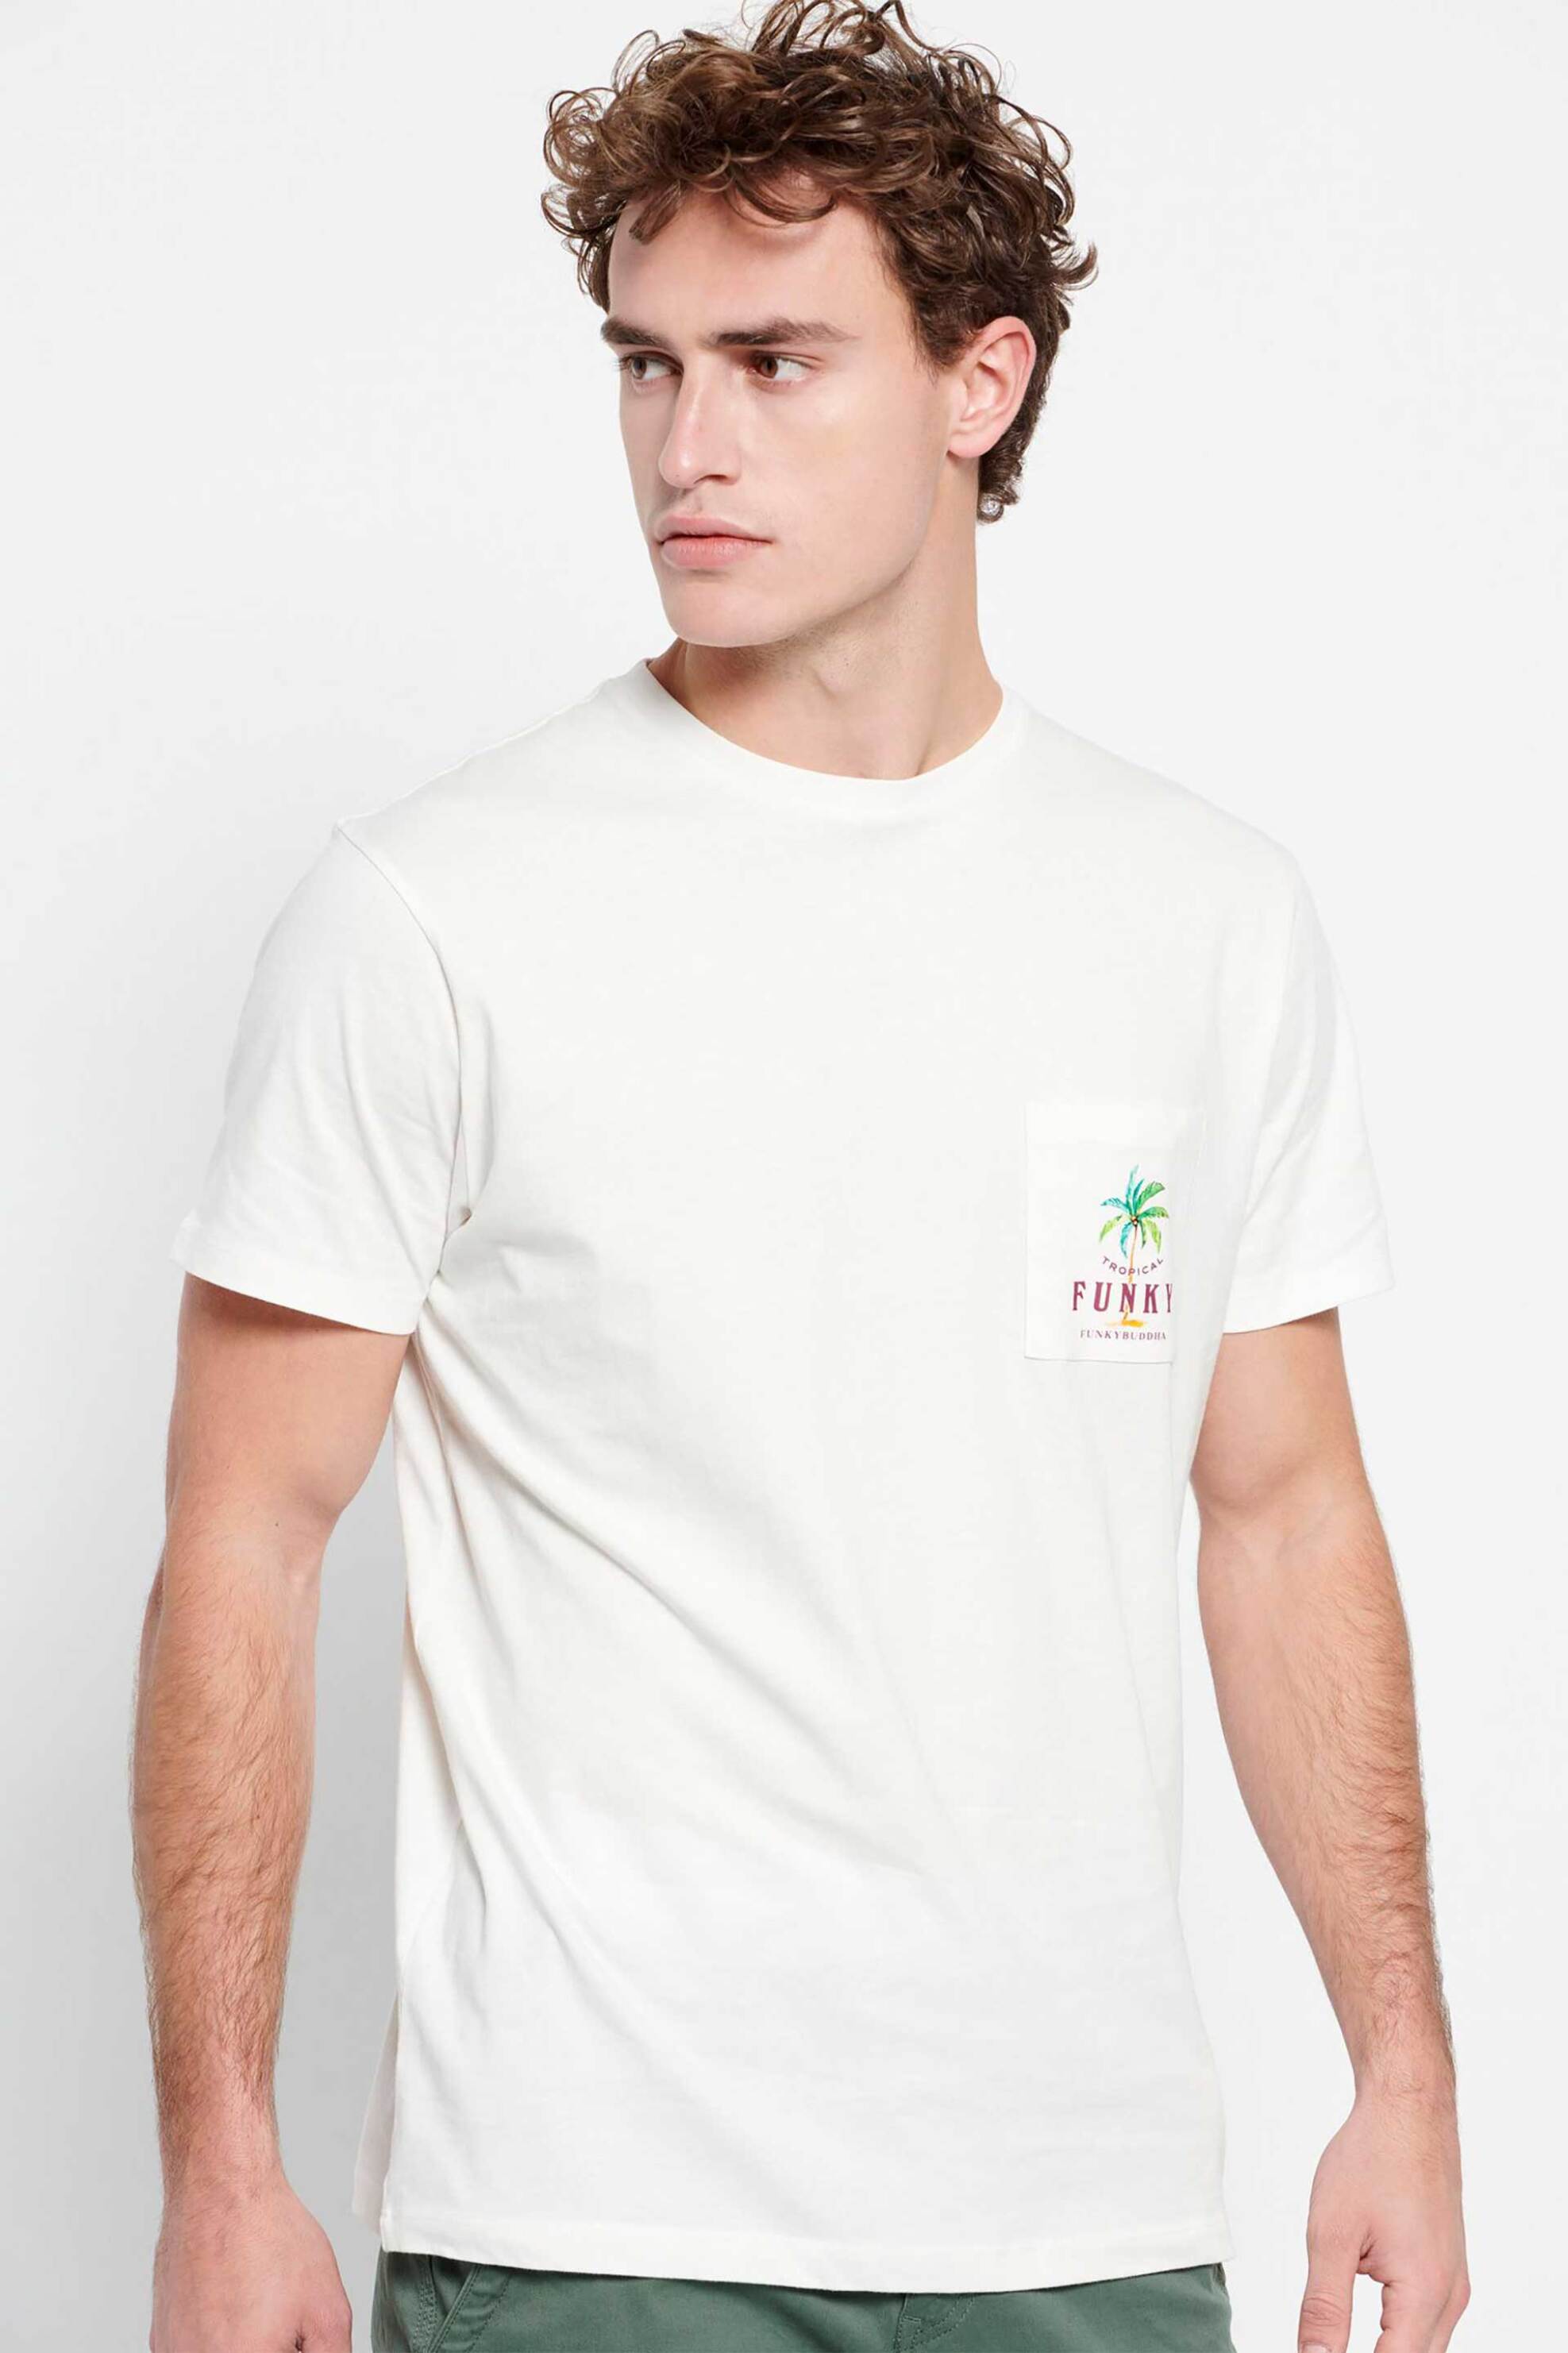 Ανδρική Μόδα > Ανδρικά Ρούχα > Ανδρικές Μπλούζες > Ανδρικά T-Shirts Funky Buddha ανδρικό βαμβακερό T-shirt μονόχρωμο με τσέπη και palm tree print στο στήθος - FBM007-385-04 Κρέμ